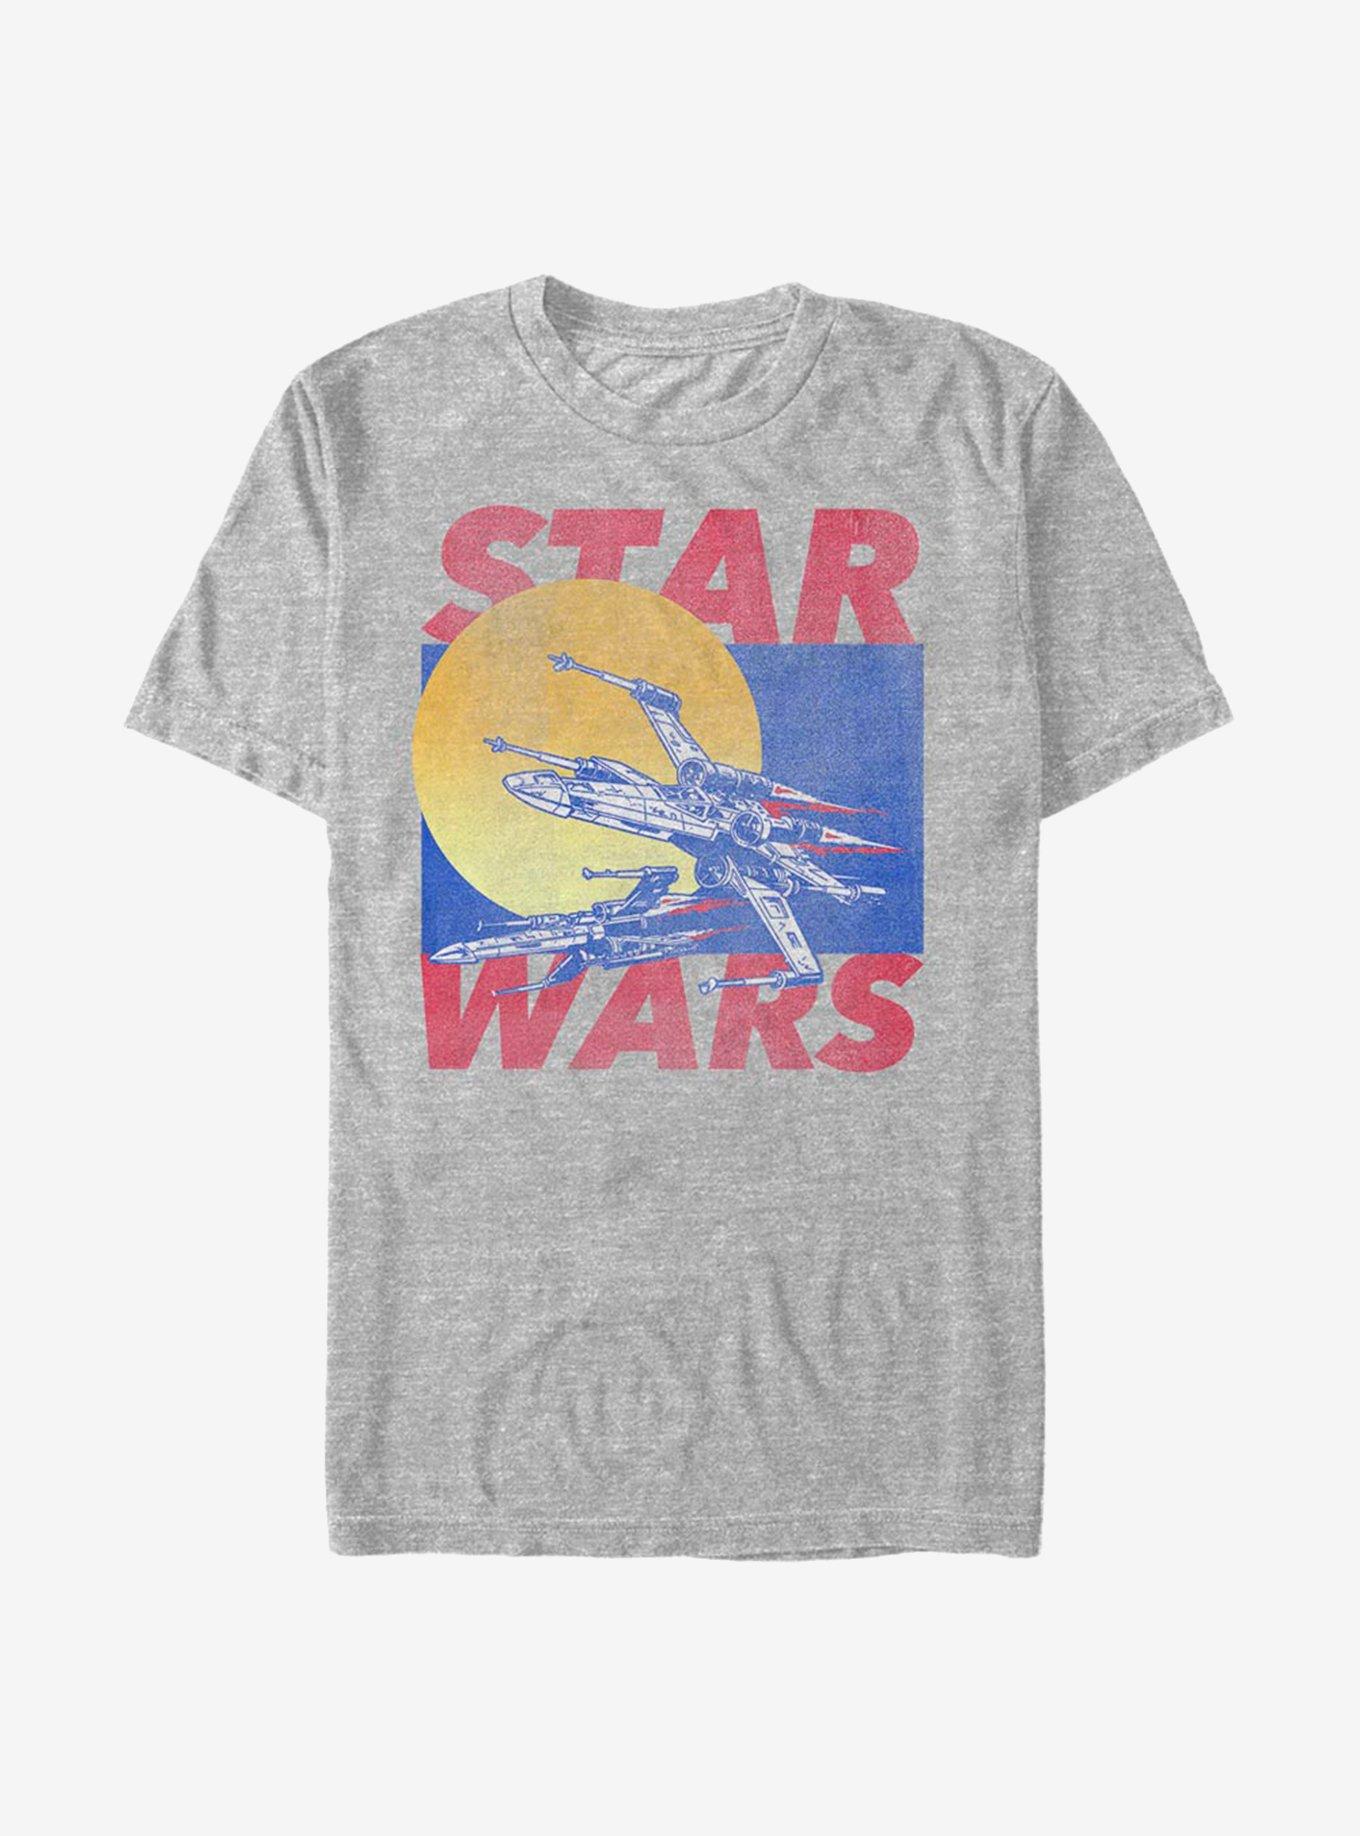 Star Wars Ships T-Shirt